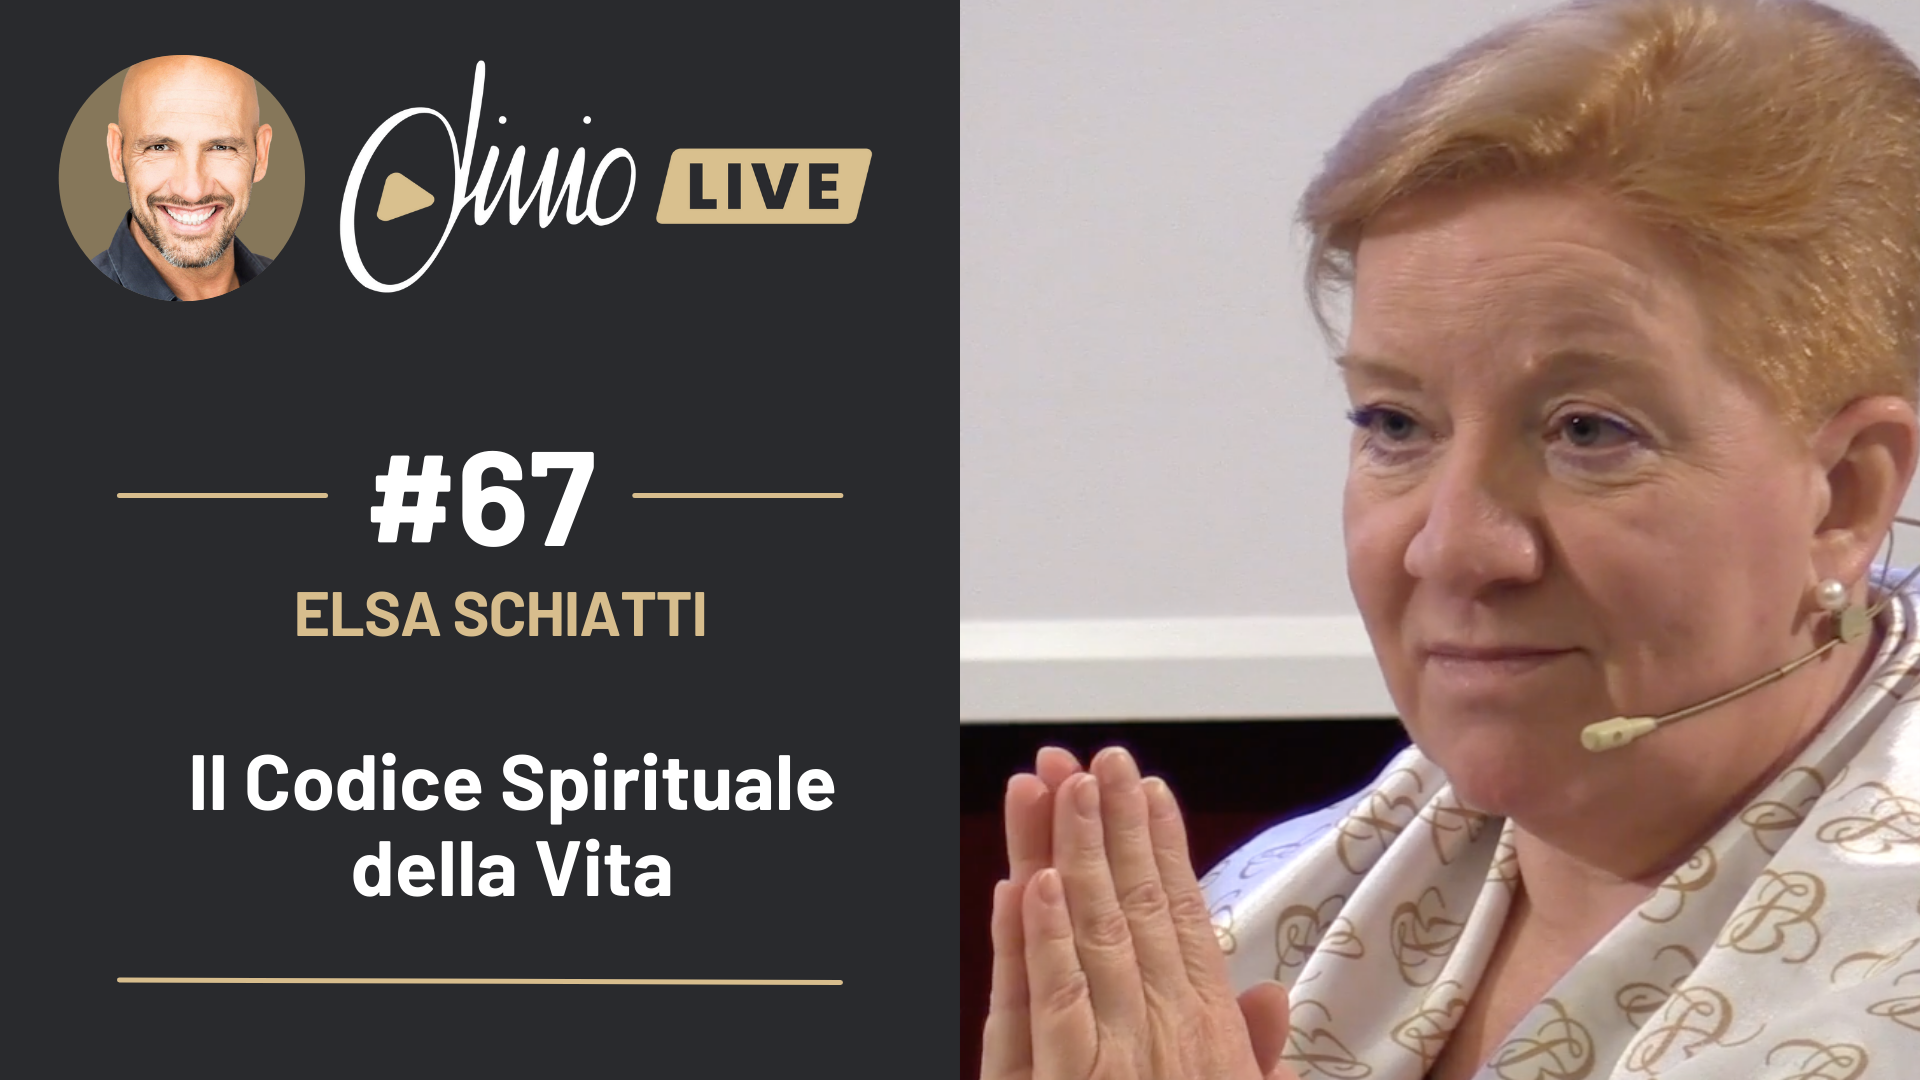 #LivioLive Elsa Schiatti – Il Codice Spirituale della Vita